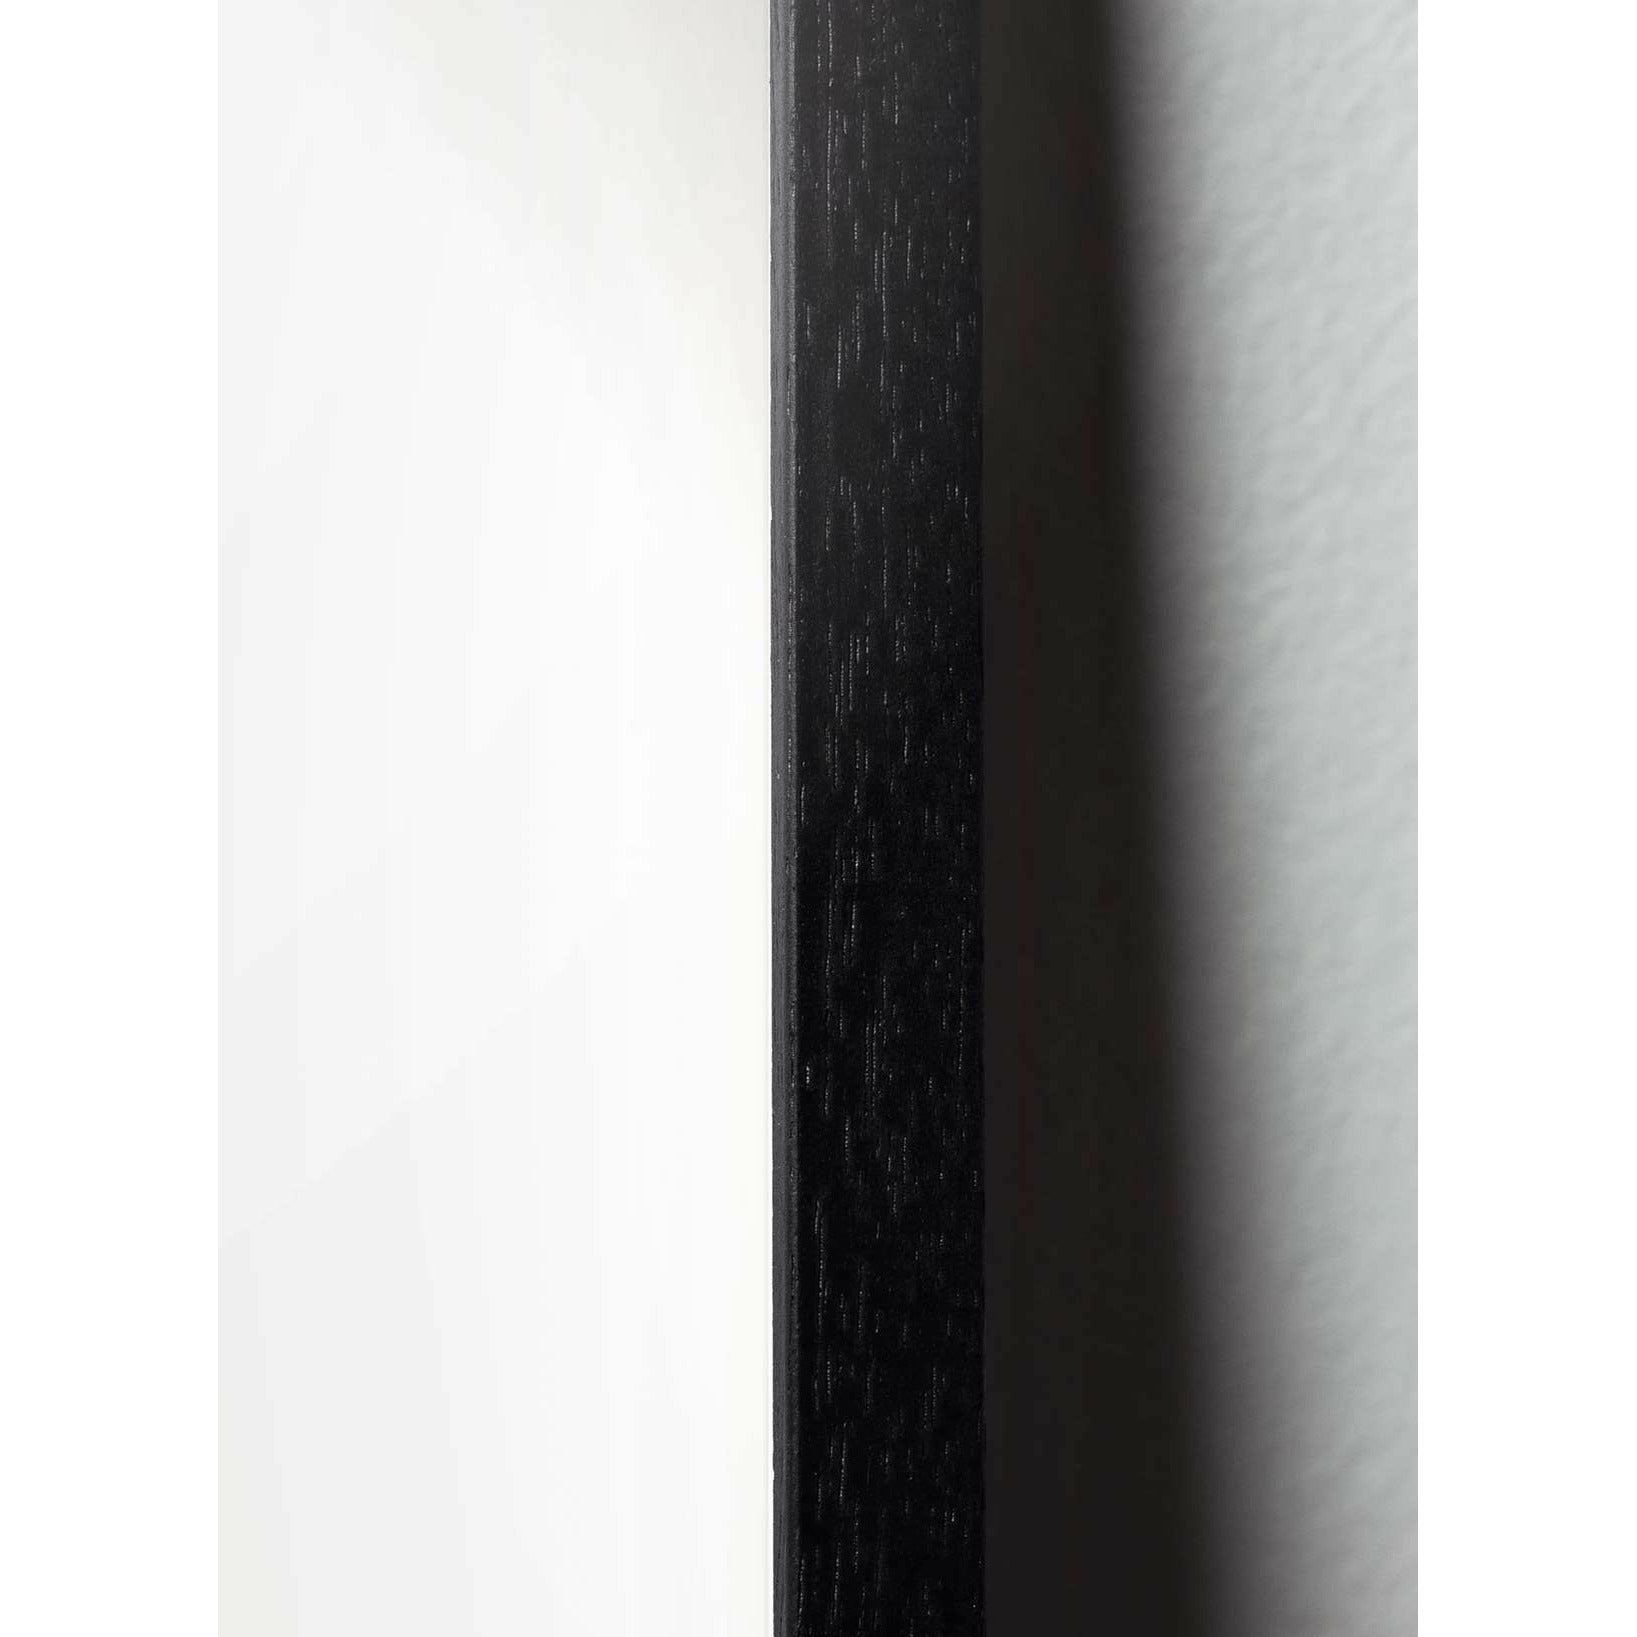 brainchild Eierfiguren Poster, Rahmen aus schwarz lackiertem Holz 50x70 cm, braun